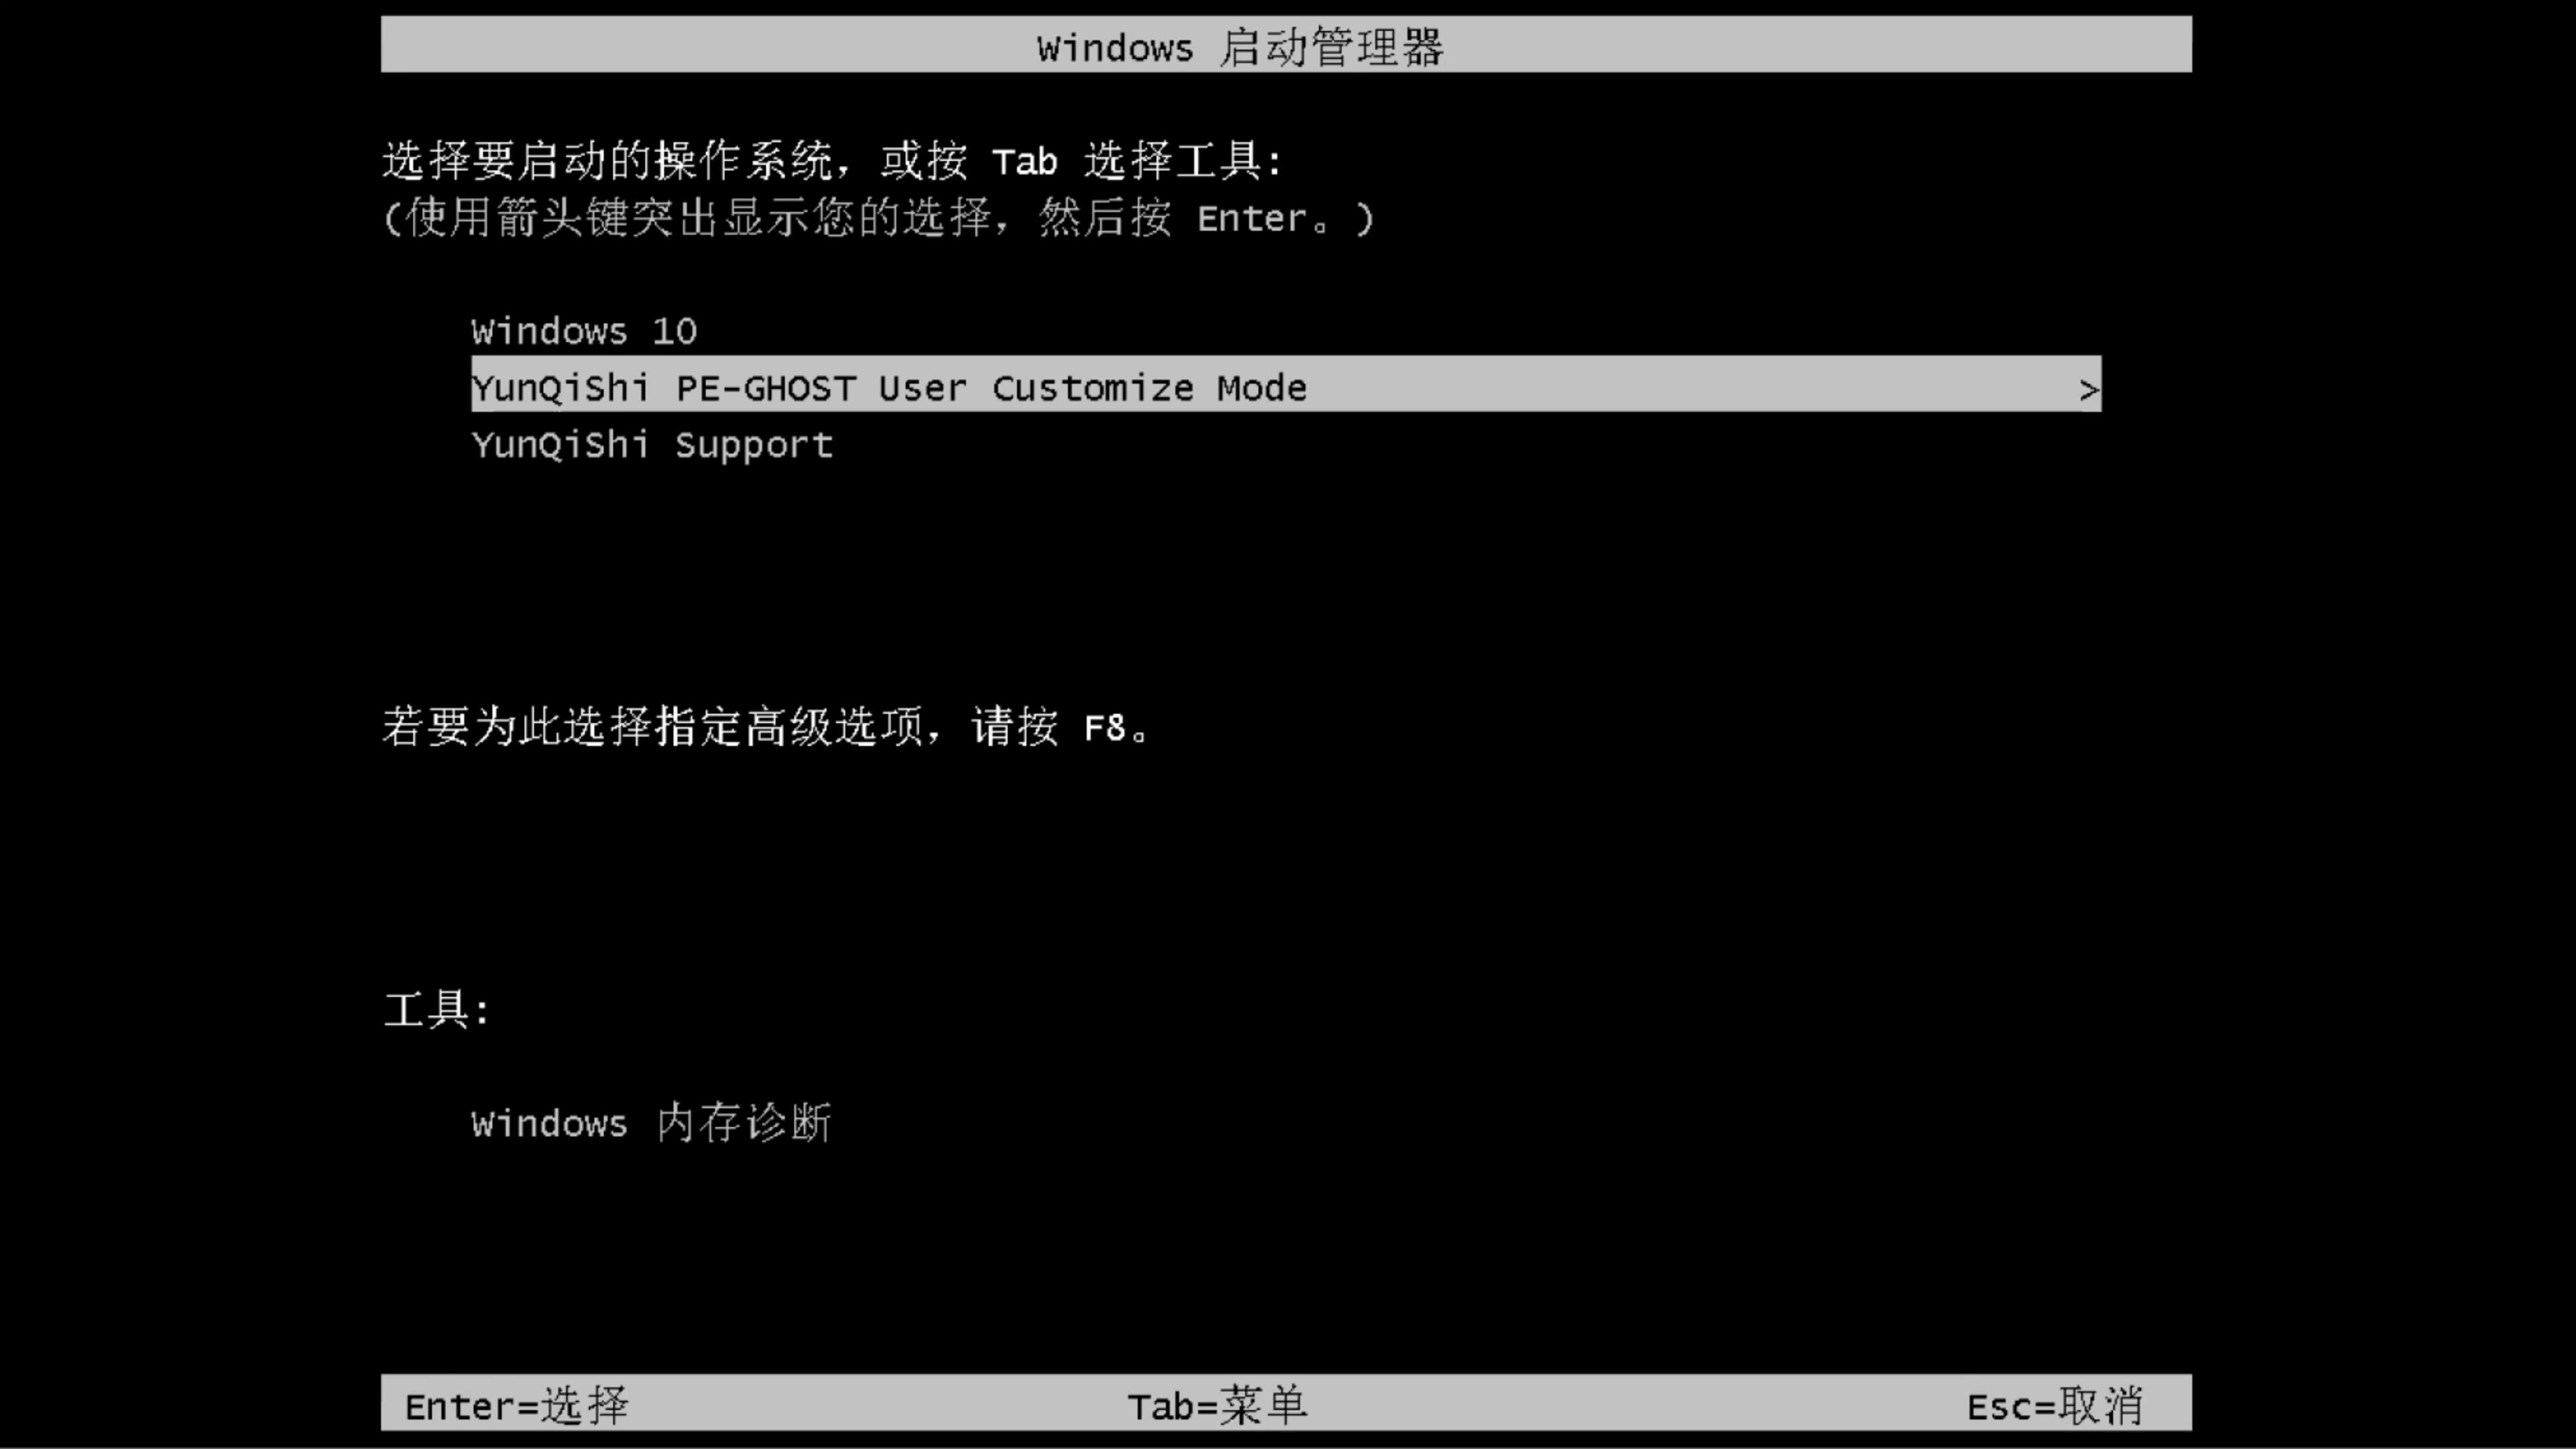 小米笔记本专用系统  Win7 x64  推荐旗舰版 V2021.02(9)